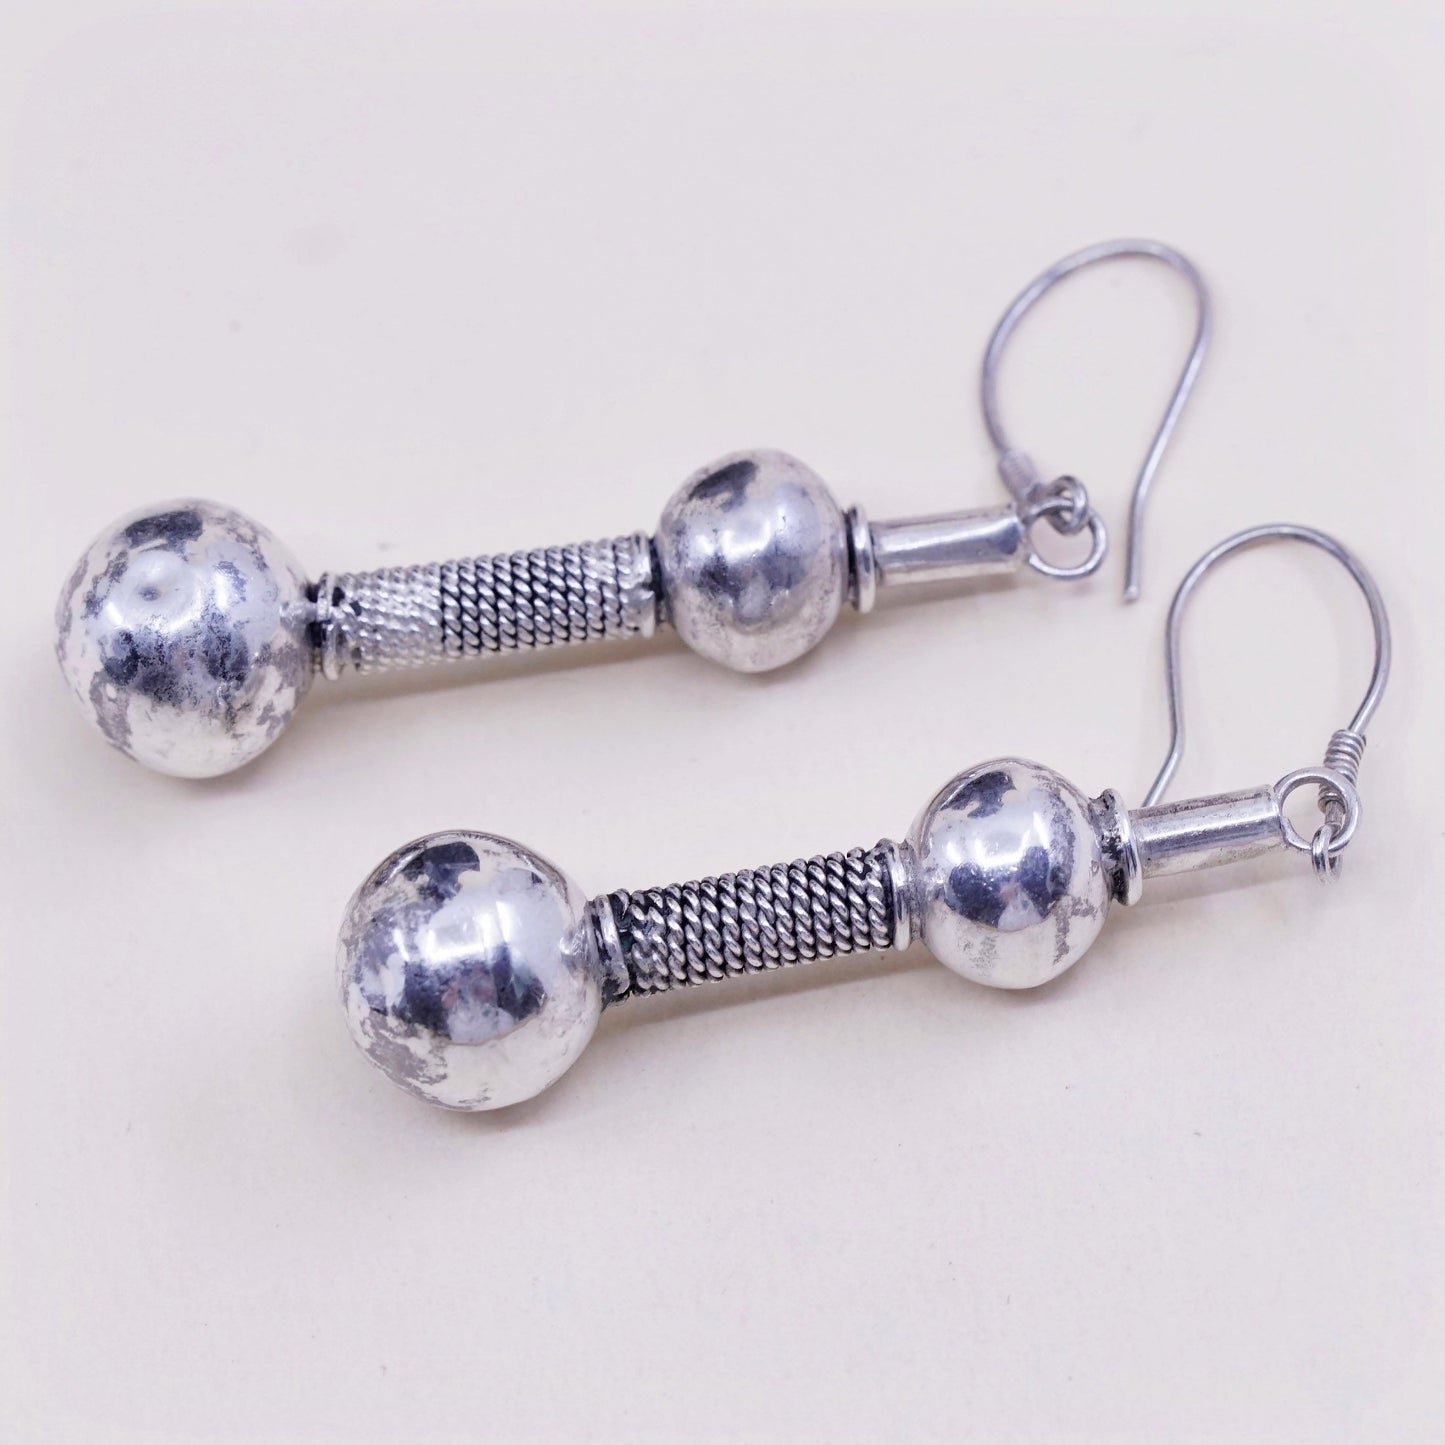 Vintage Sterling 925 silver handmade teardrop earrings and beads